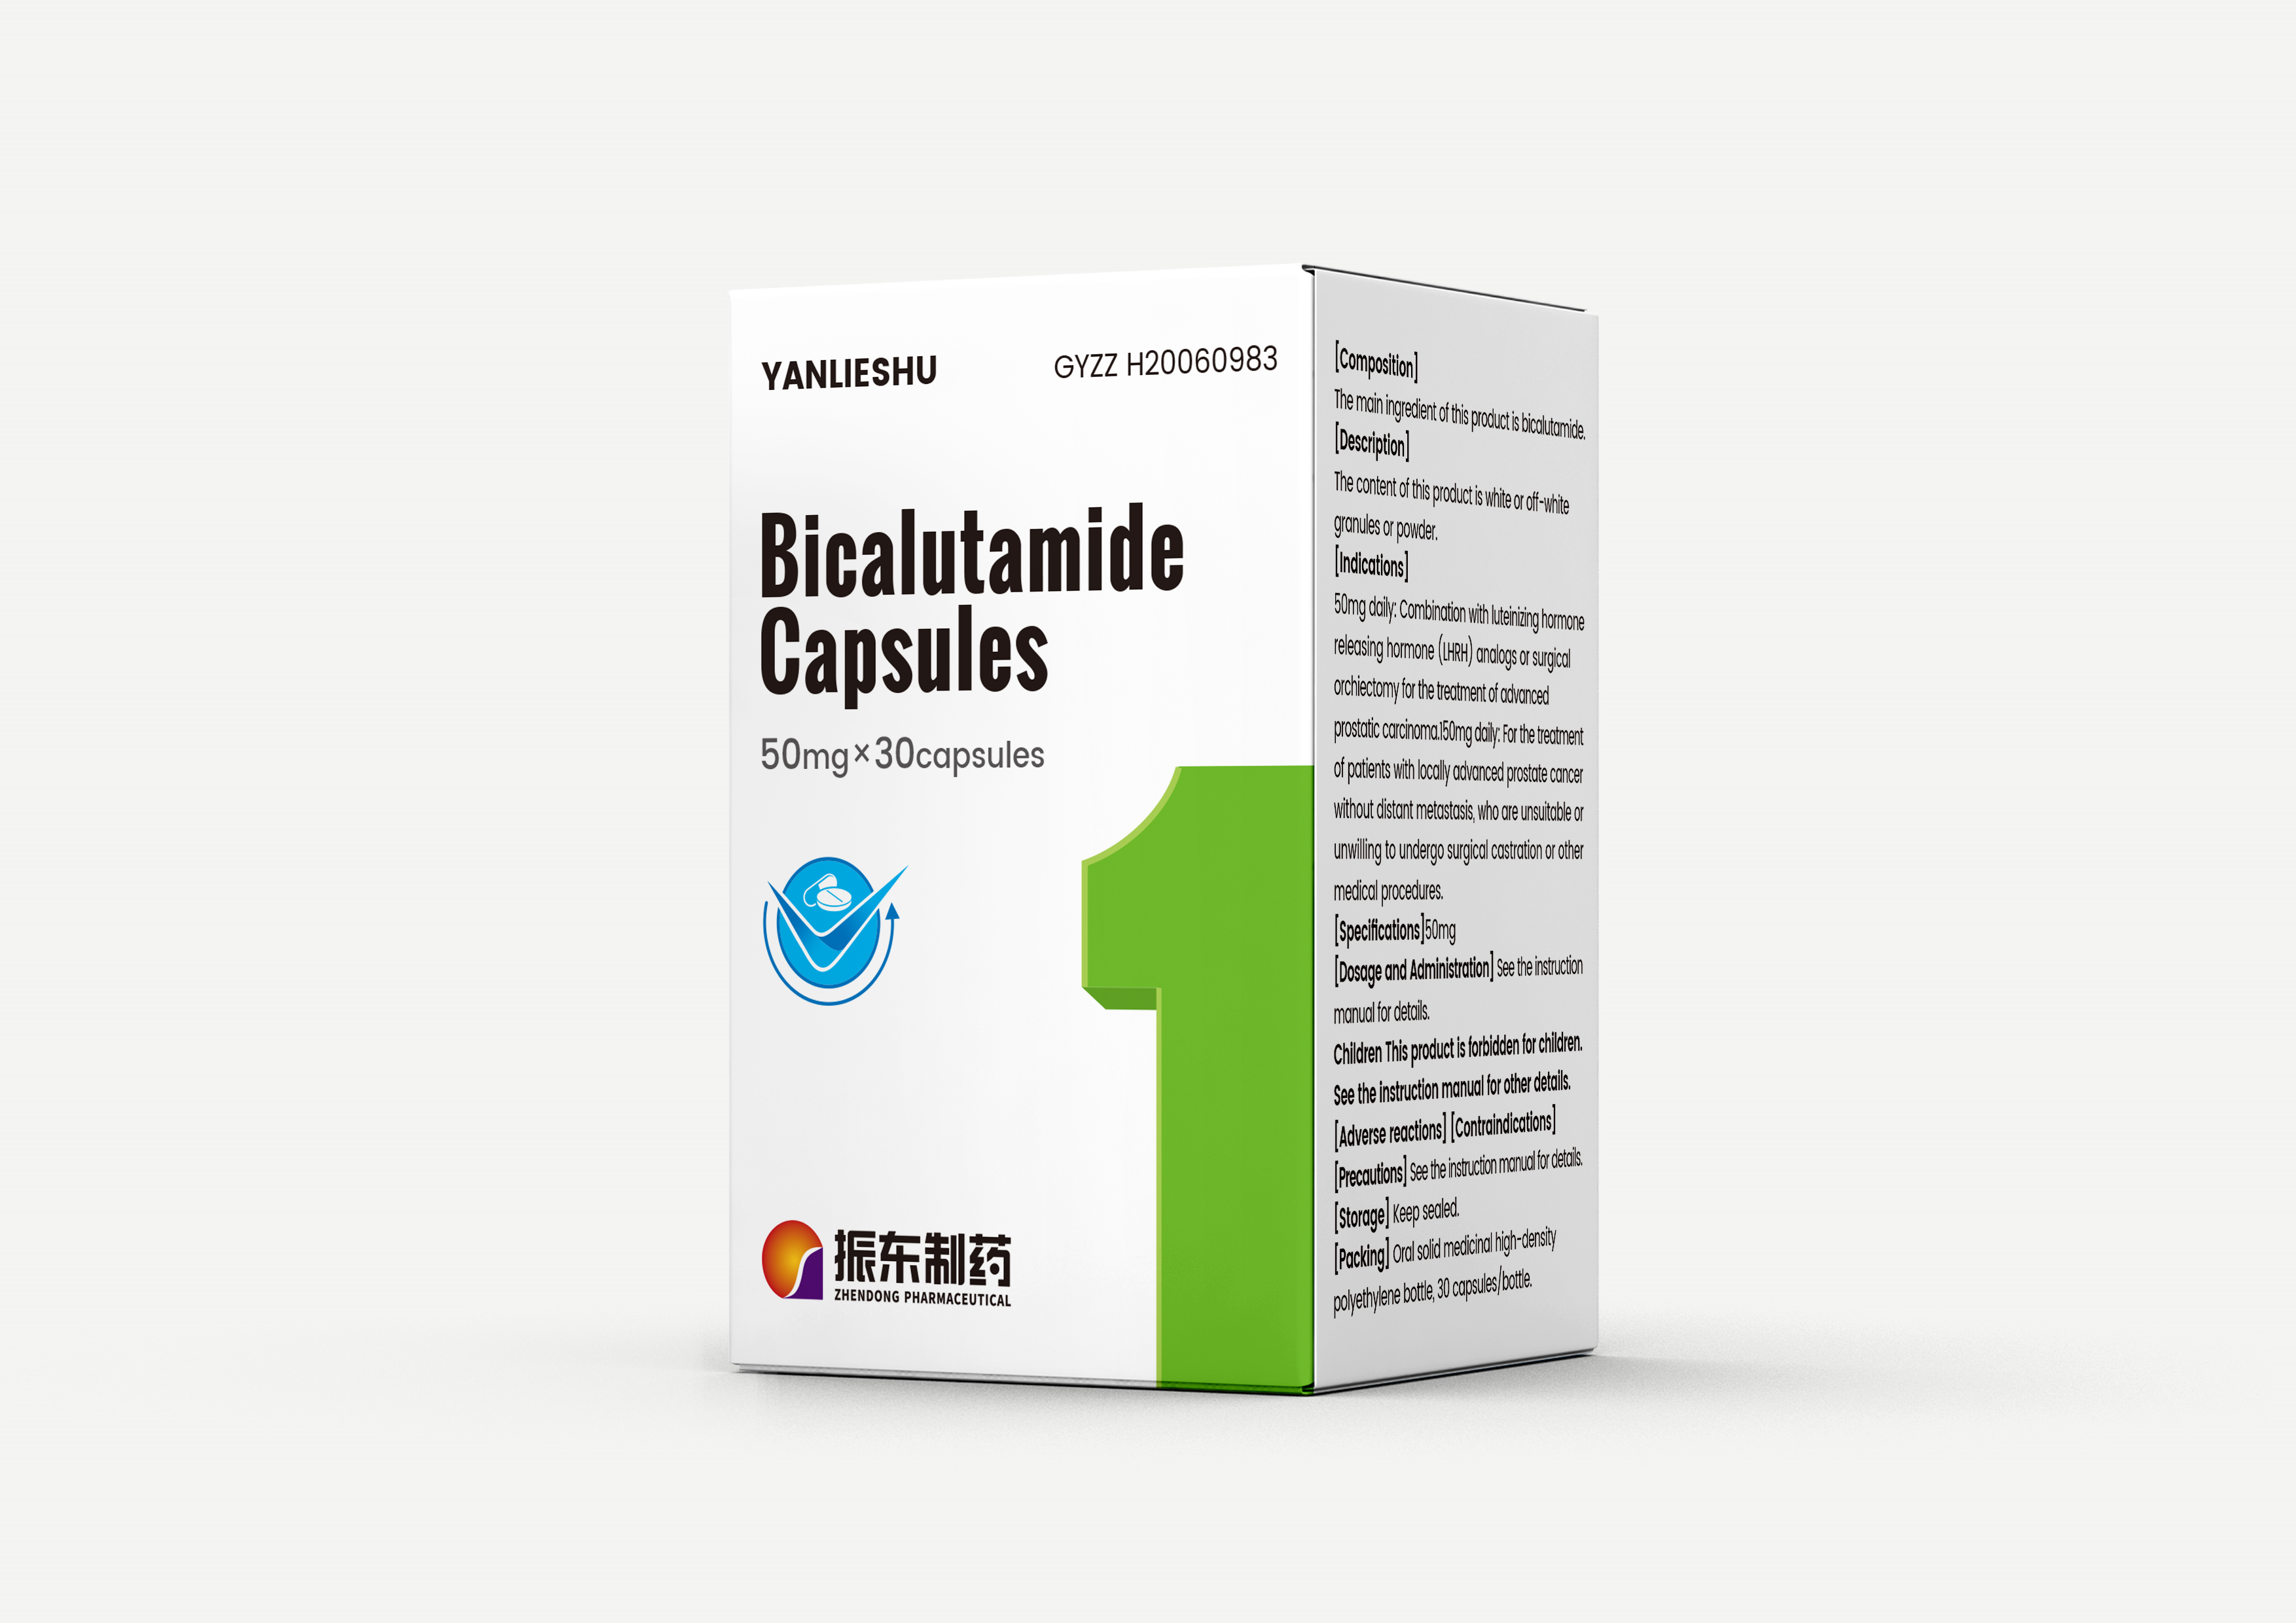 Bicalutamide capsules